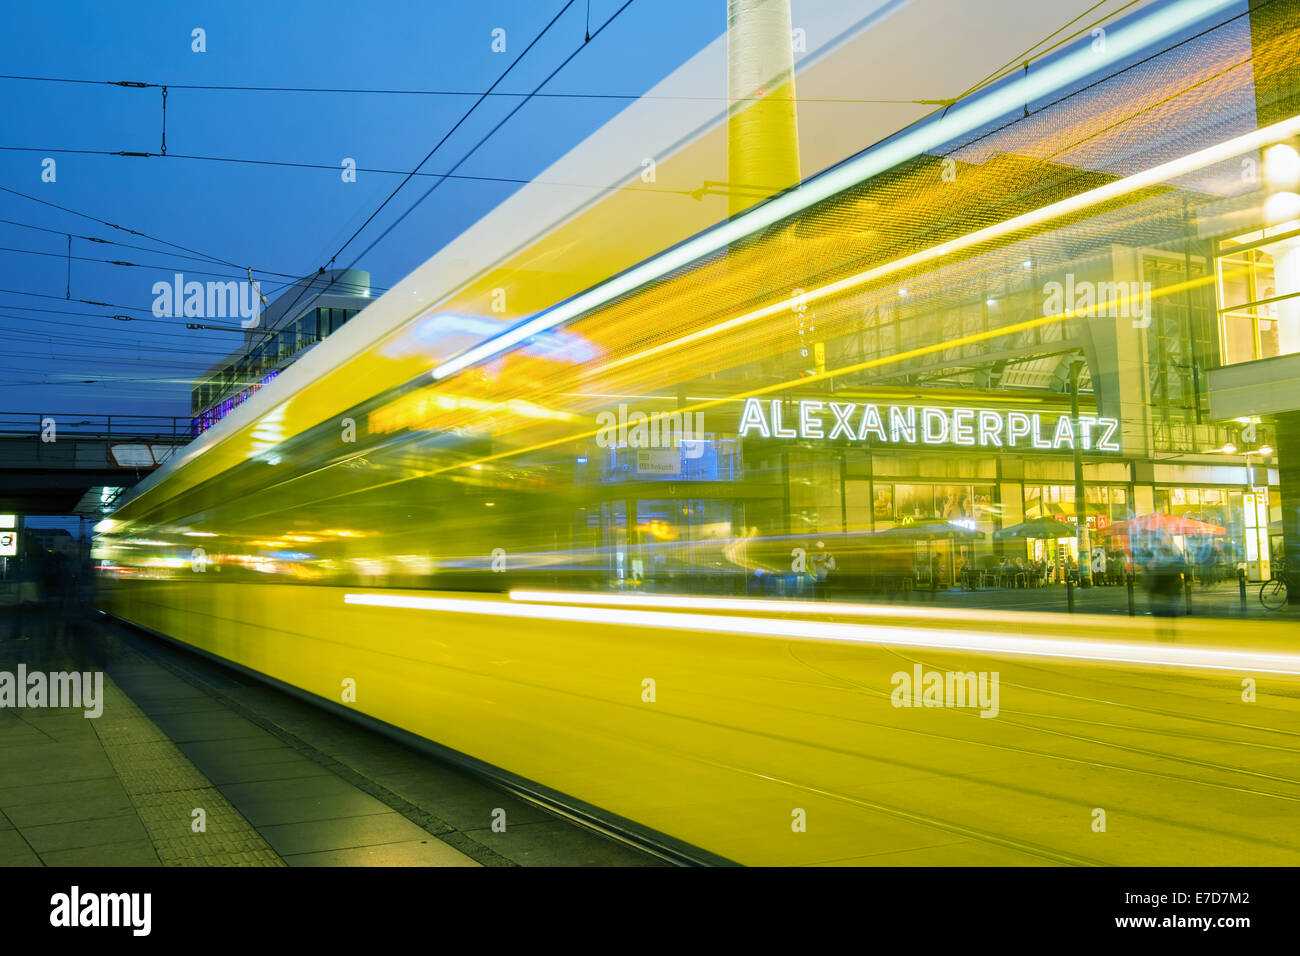 Vue de la nuit de tramway à Alexanderplatz Mitte Berlin Allemagne Banque D'Images